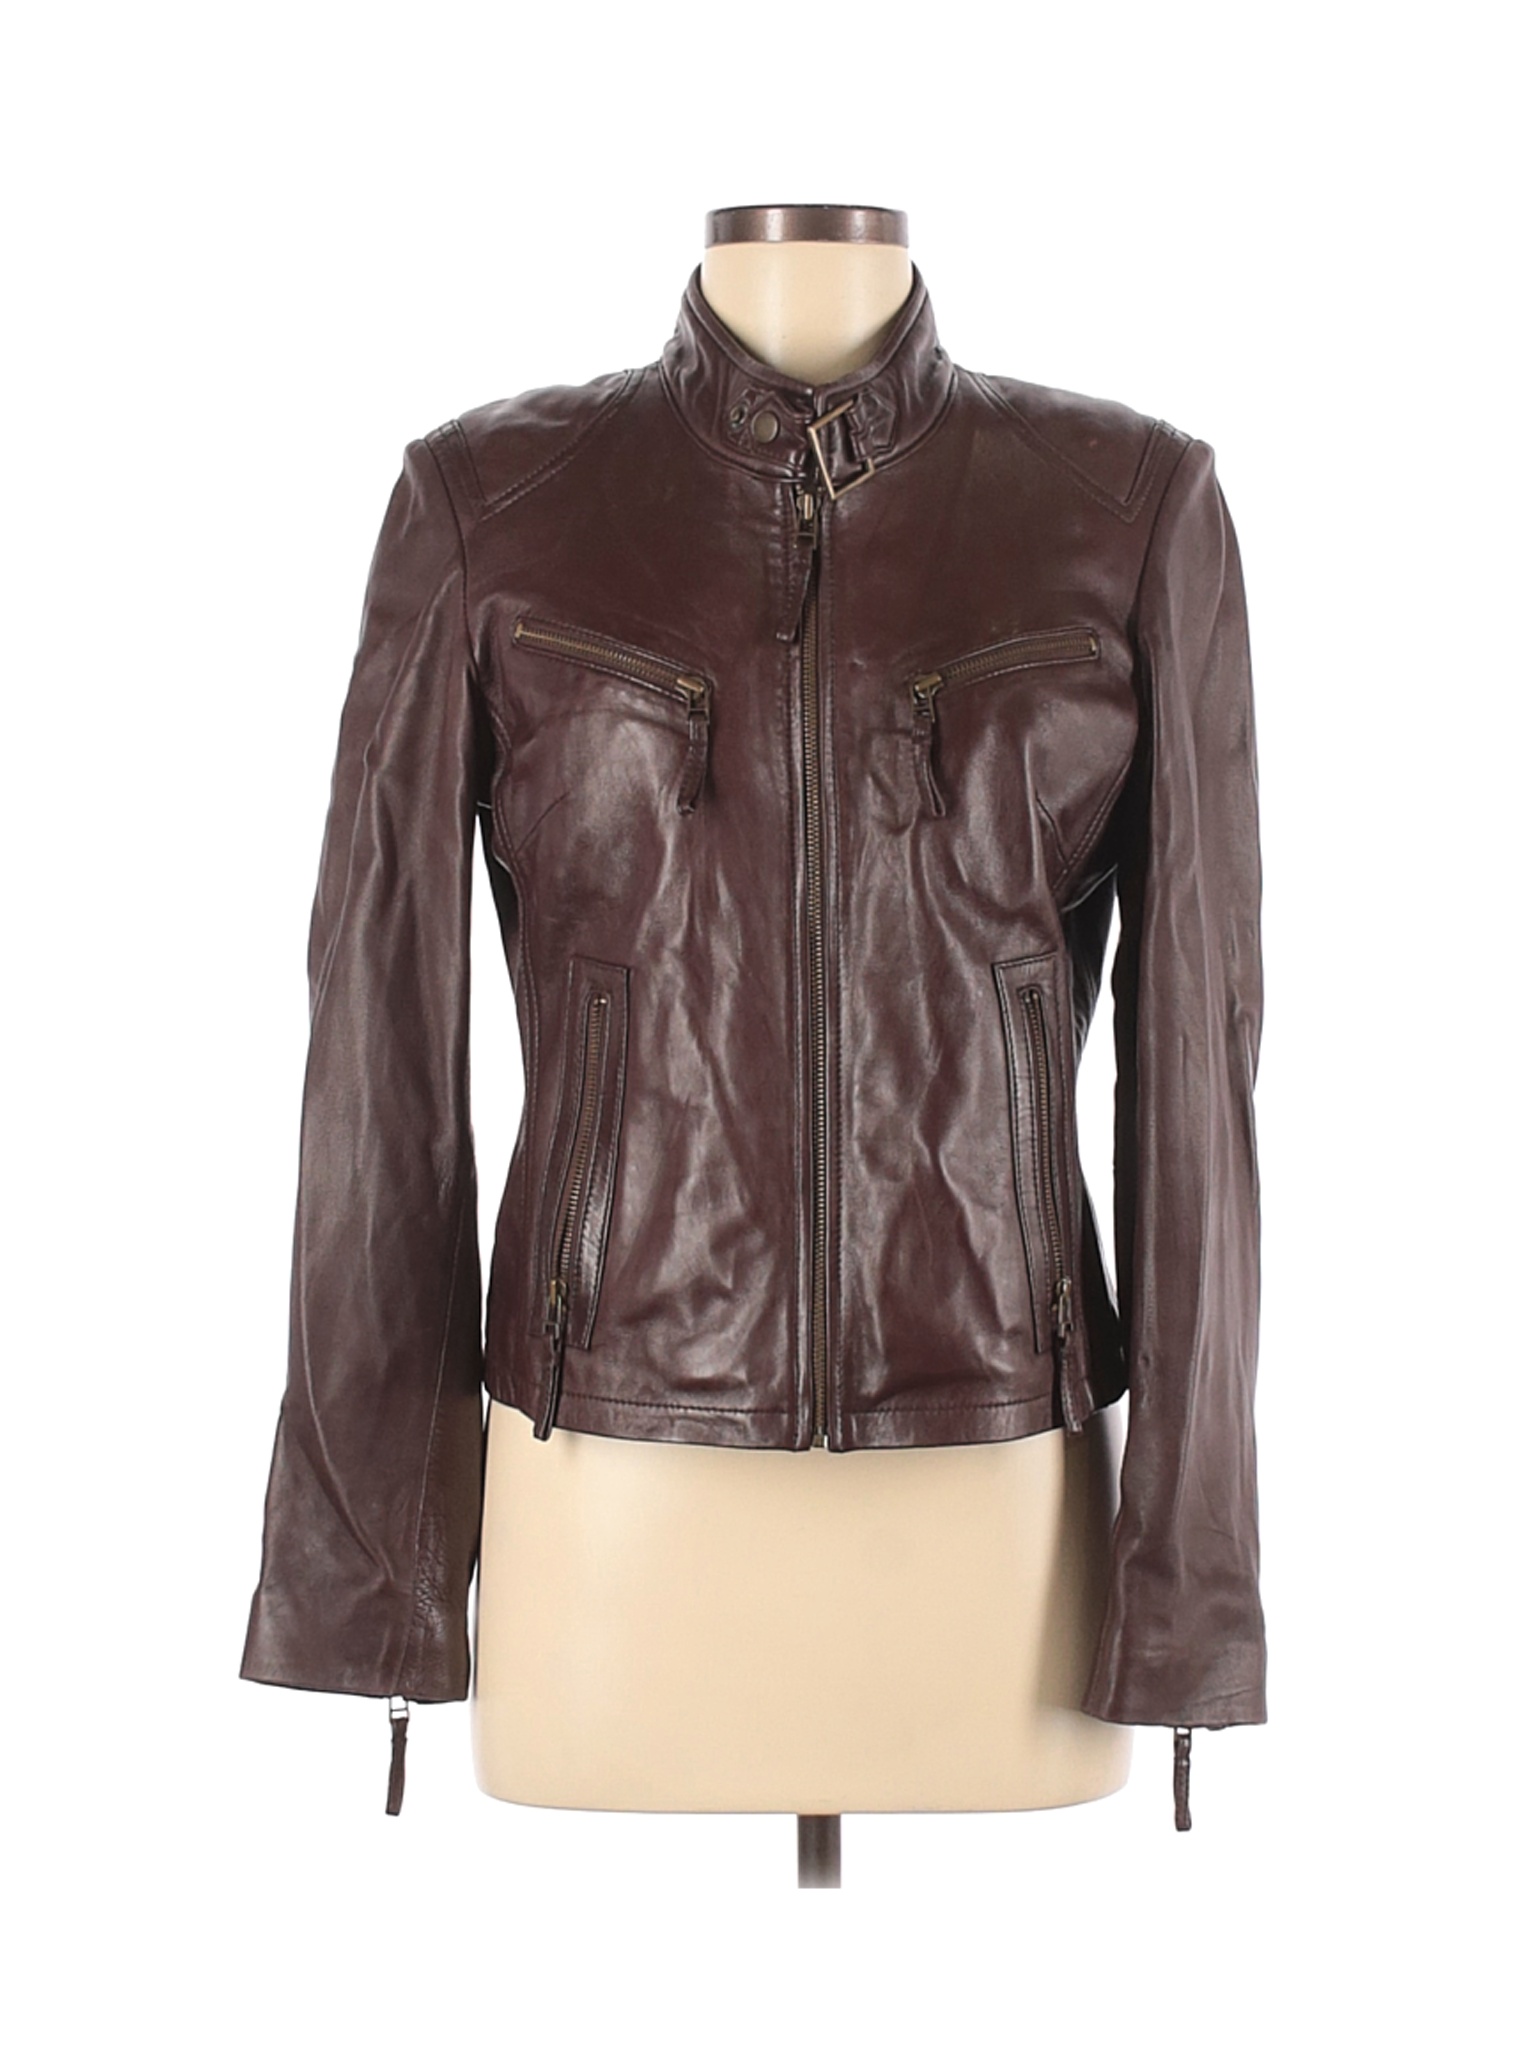 Whet Blu Women Brown Leather Jacket M | eBay